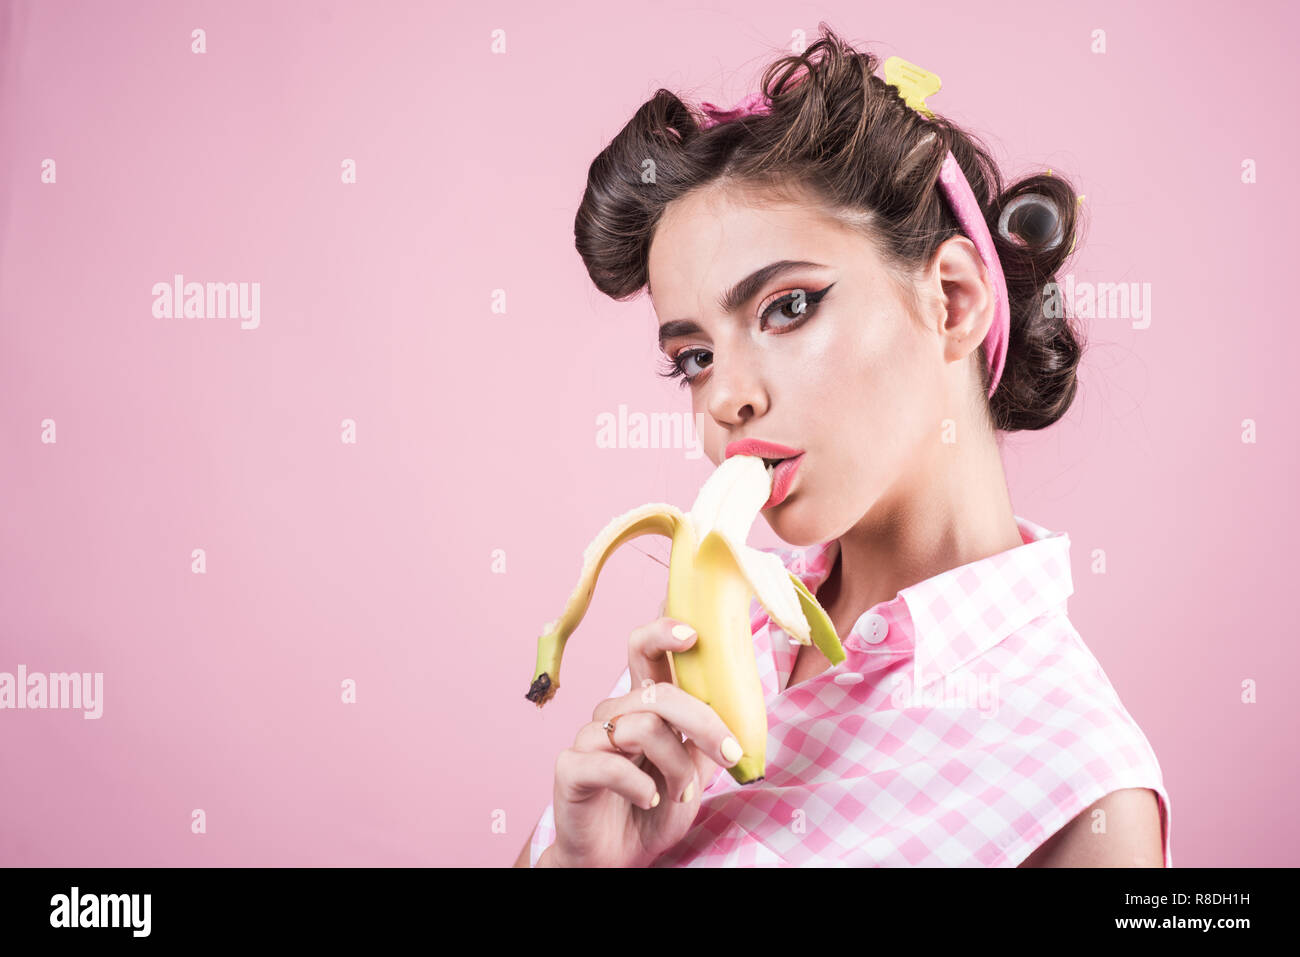 Bananen Diät. Pin up Frau mit trendigen Make-up. pinup Girl mit Mode Haare. retro Frau Banane essen. hübsches Mädchen im Vintage Style, kopieren. Verkauf von Gesundheit Stockfoto